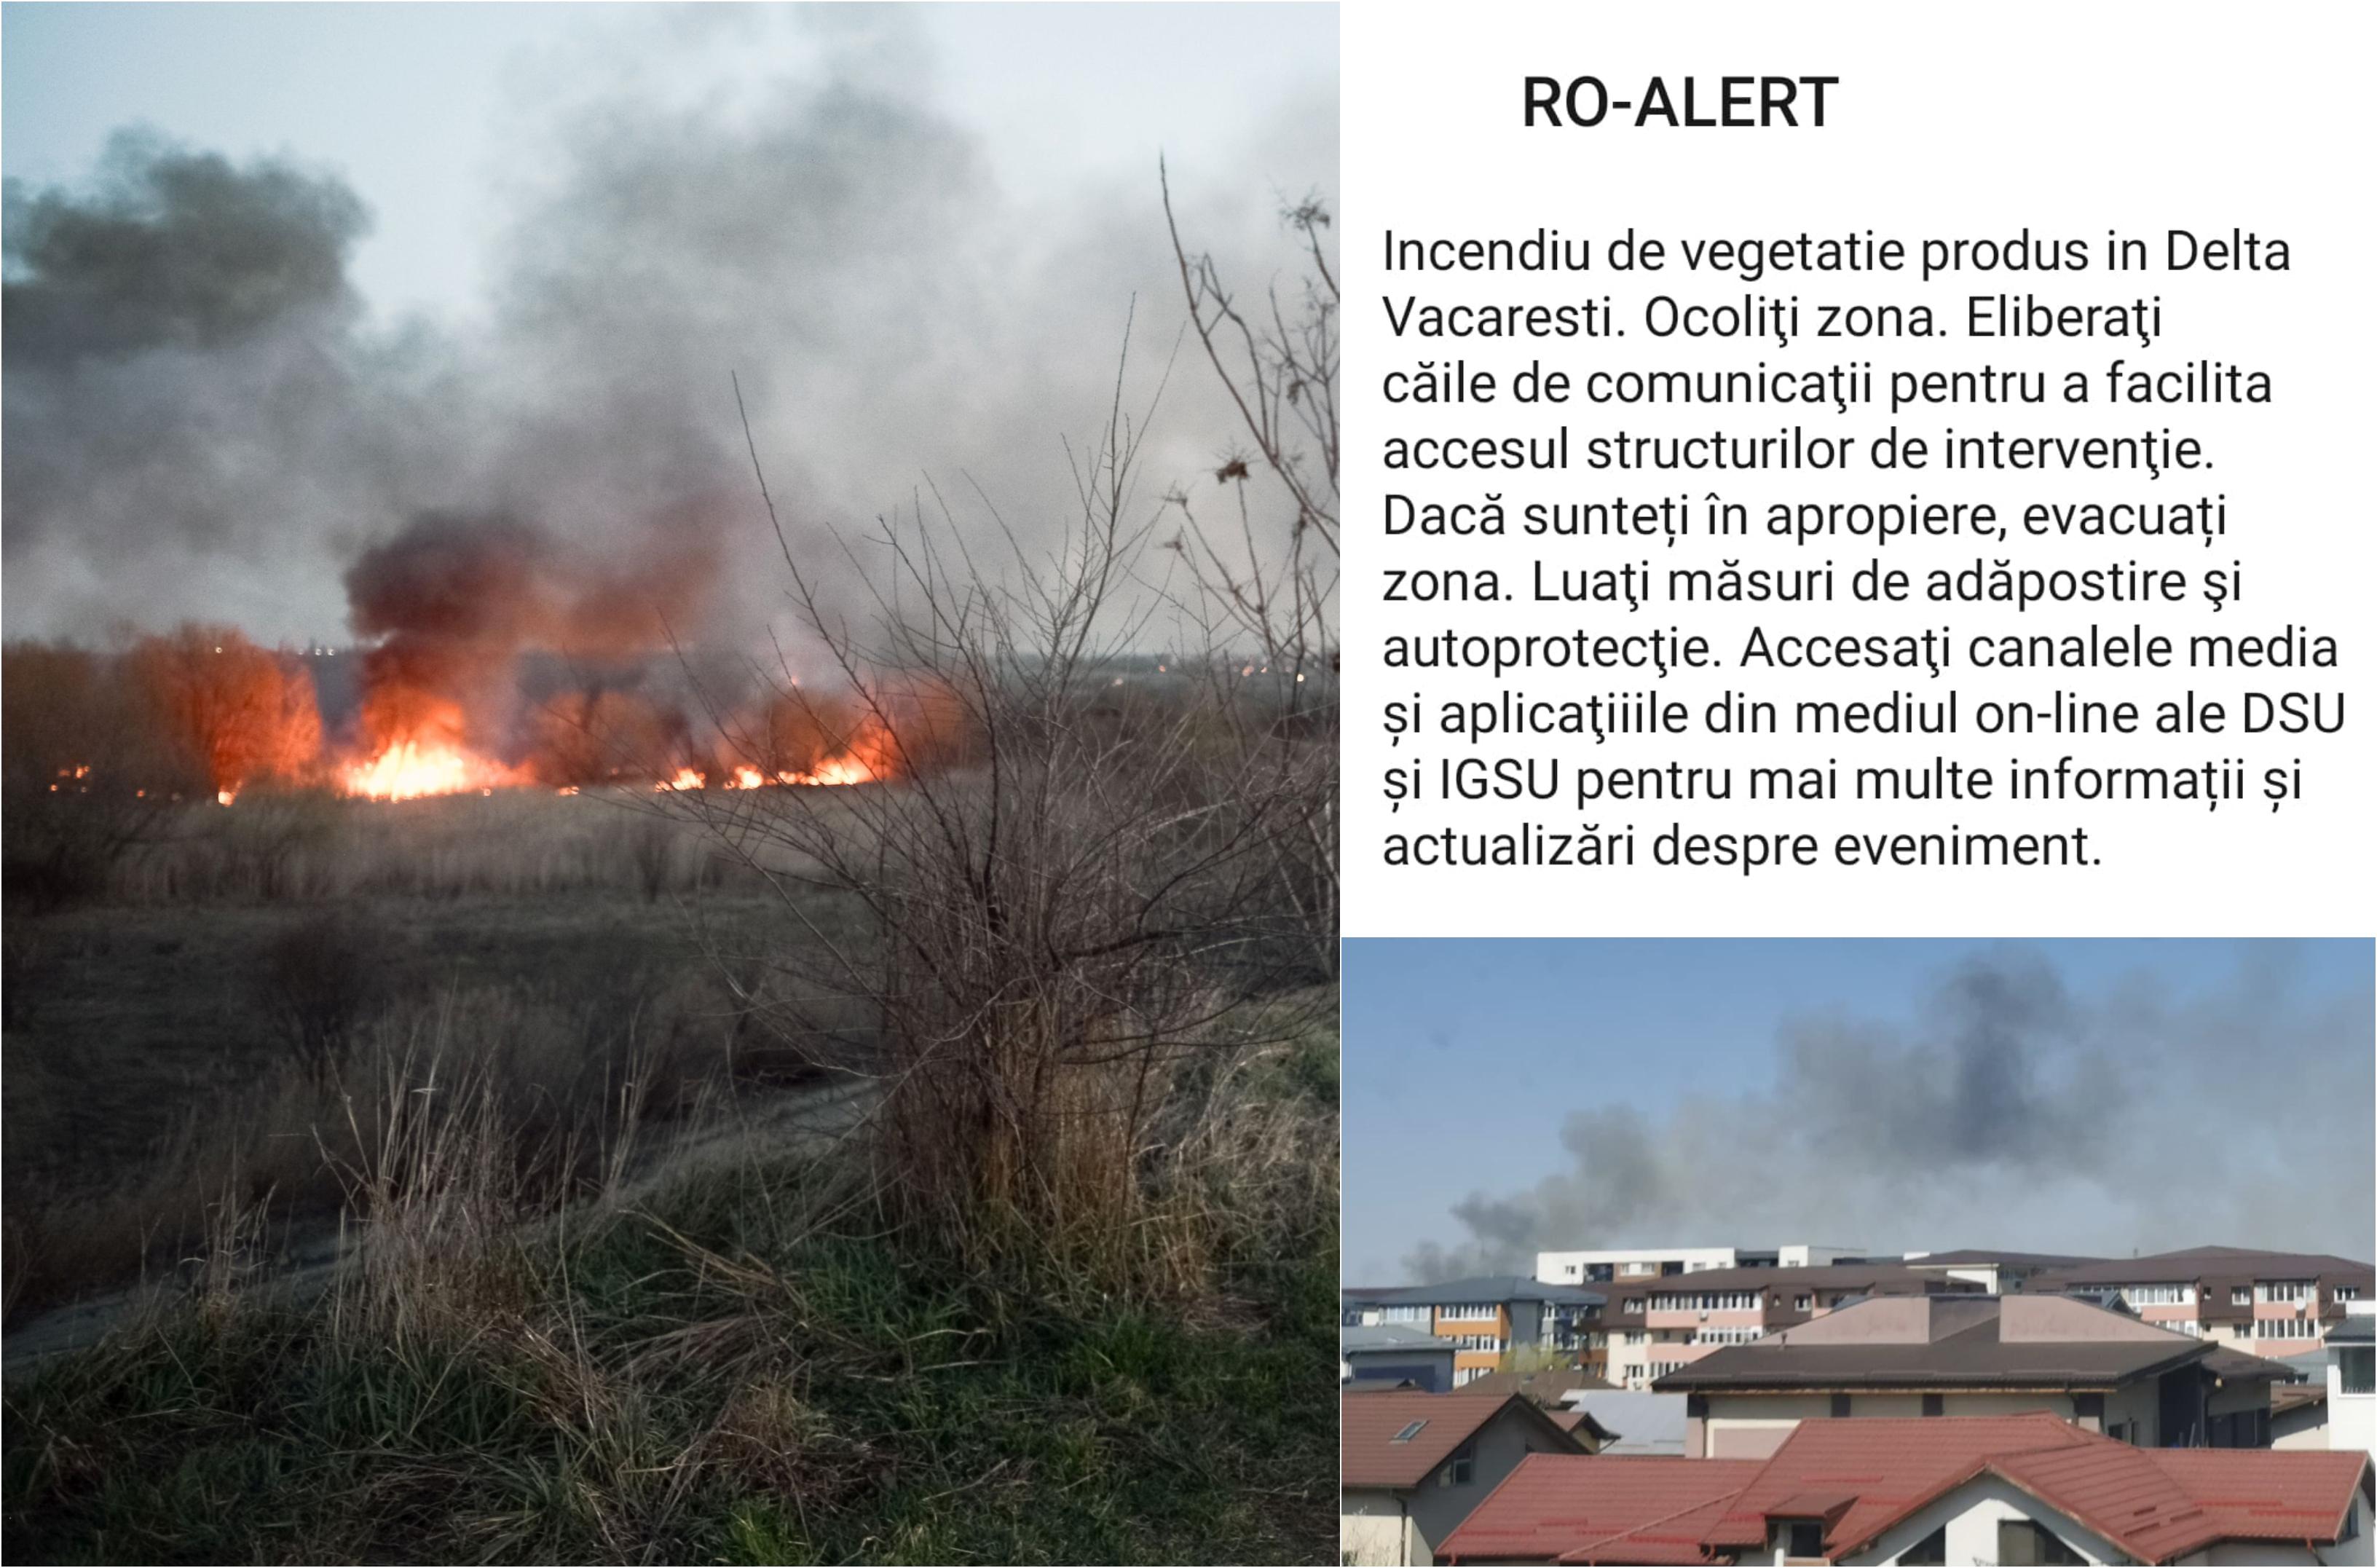 colah de fotografii cu text de avertizare pentru incendiu, imagini cu vegetatie in flacari si fum